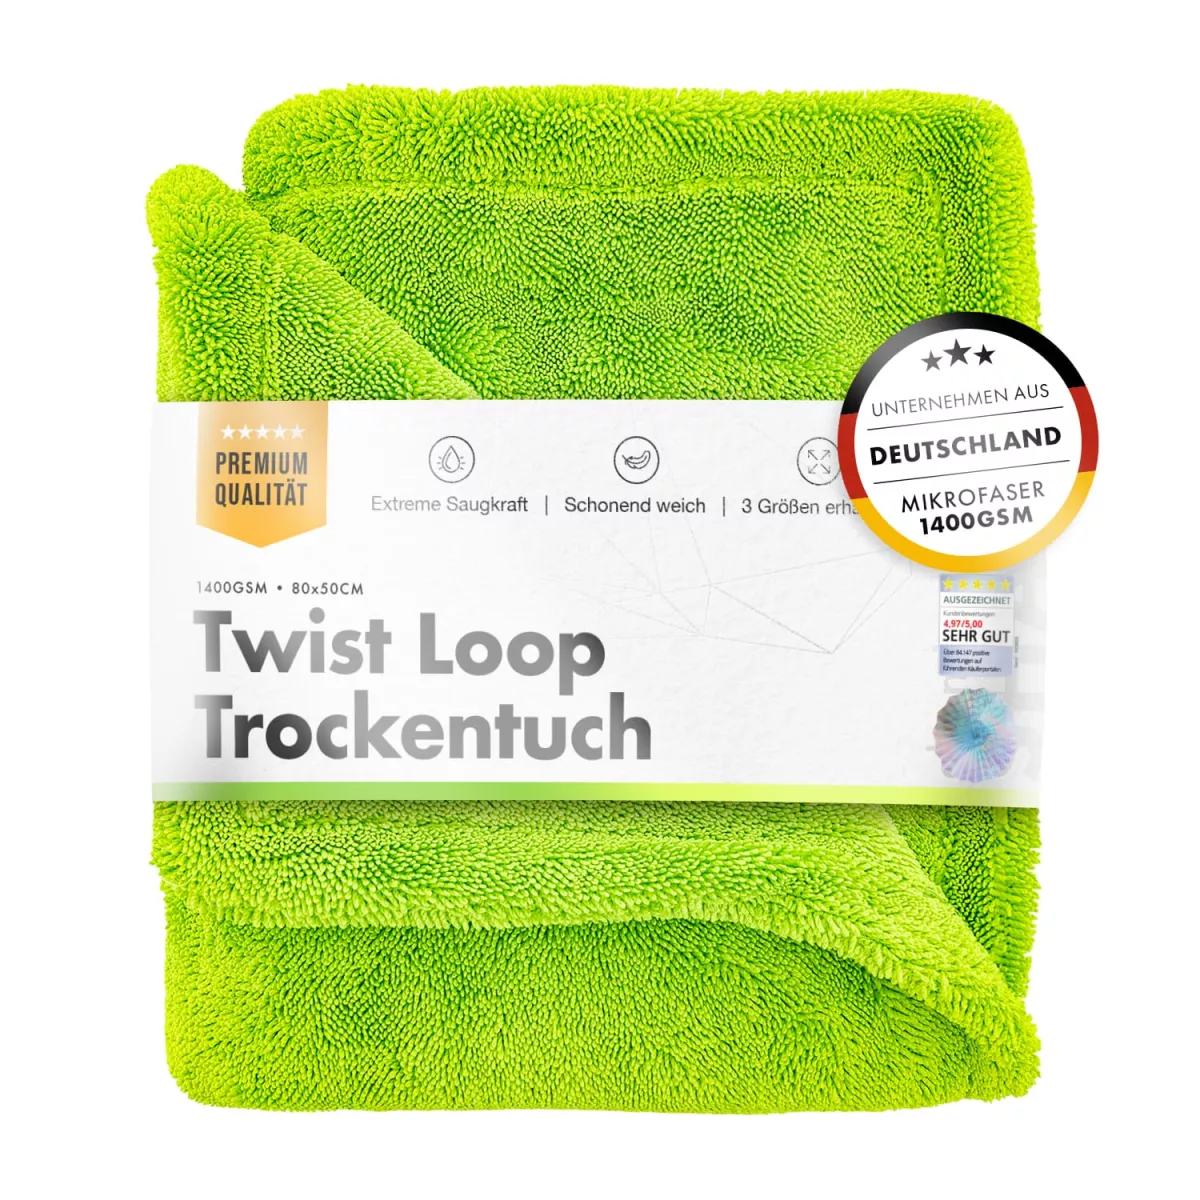 chemicalworkz Shark Twisted Loop Towel 1400GSM Grün Trockentuch 80x50cm